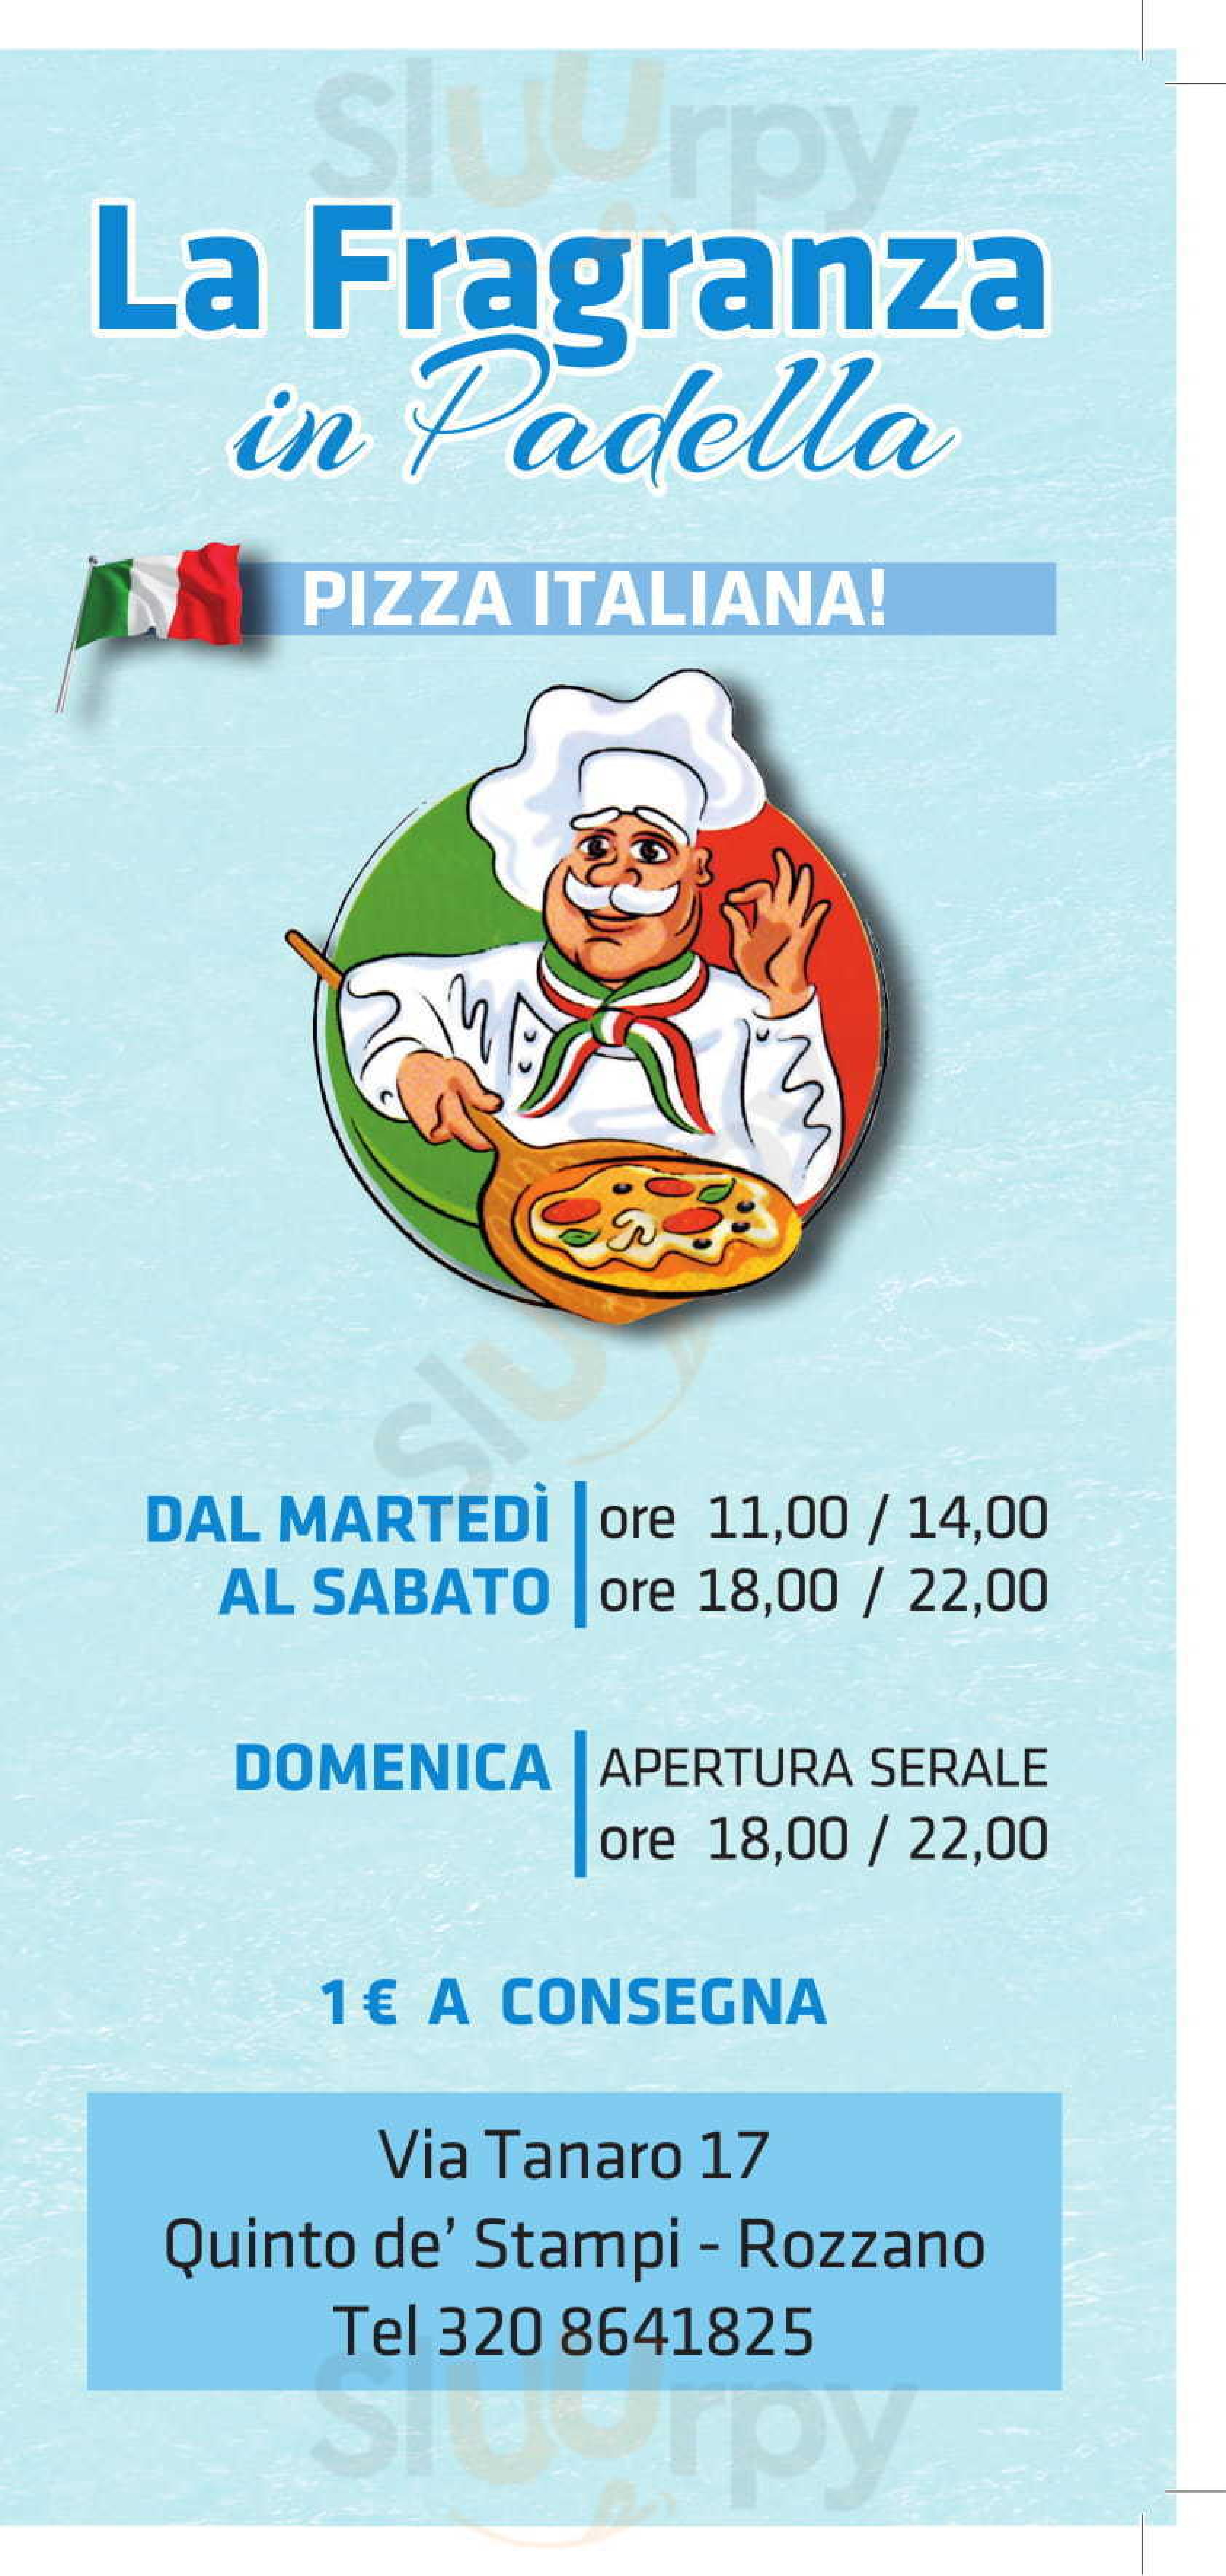 La Fragranza in Padella - La Vera Pizza Rozzano menù 1 pagina